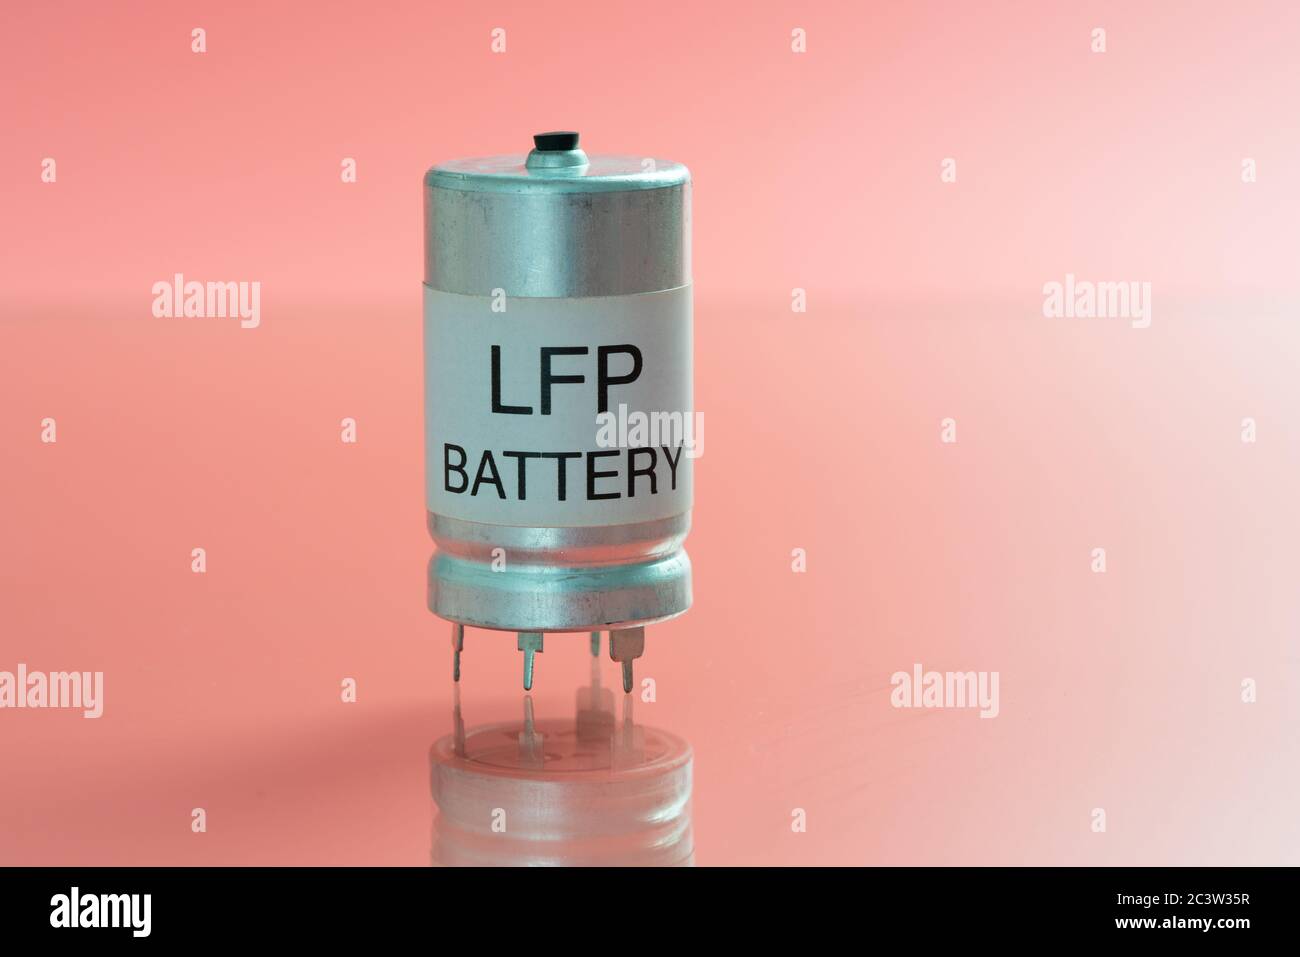 Batteria al litio ferro fosfato LiFePO o LFP batteria al litio ferrofosfato , è una batteria agli ioni di litio che usa LiFePO come catodo, e grafiti Foto Stock